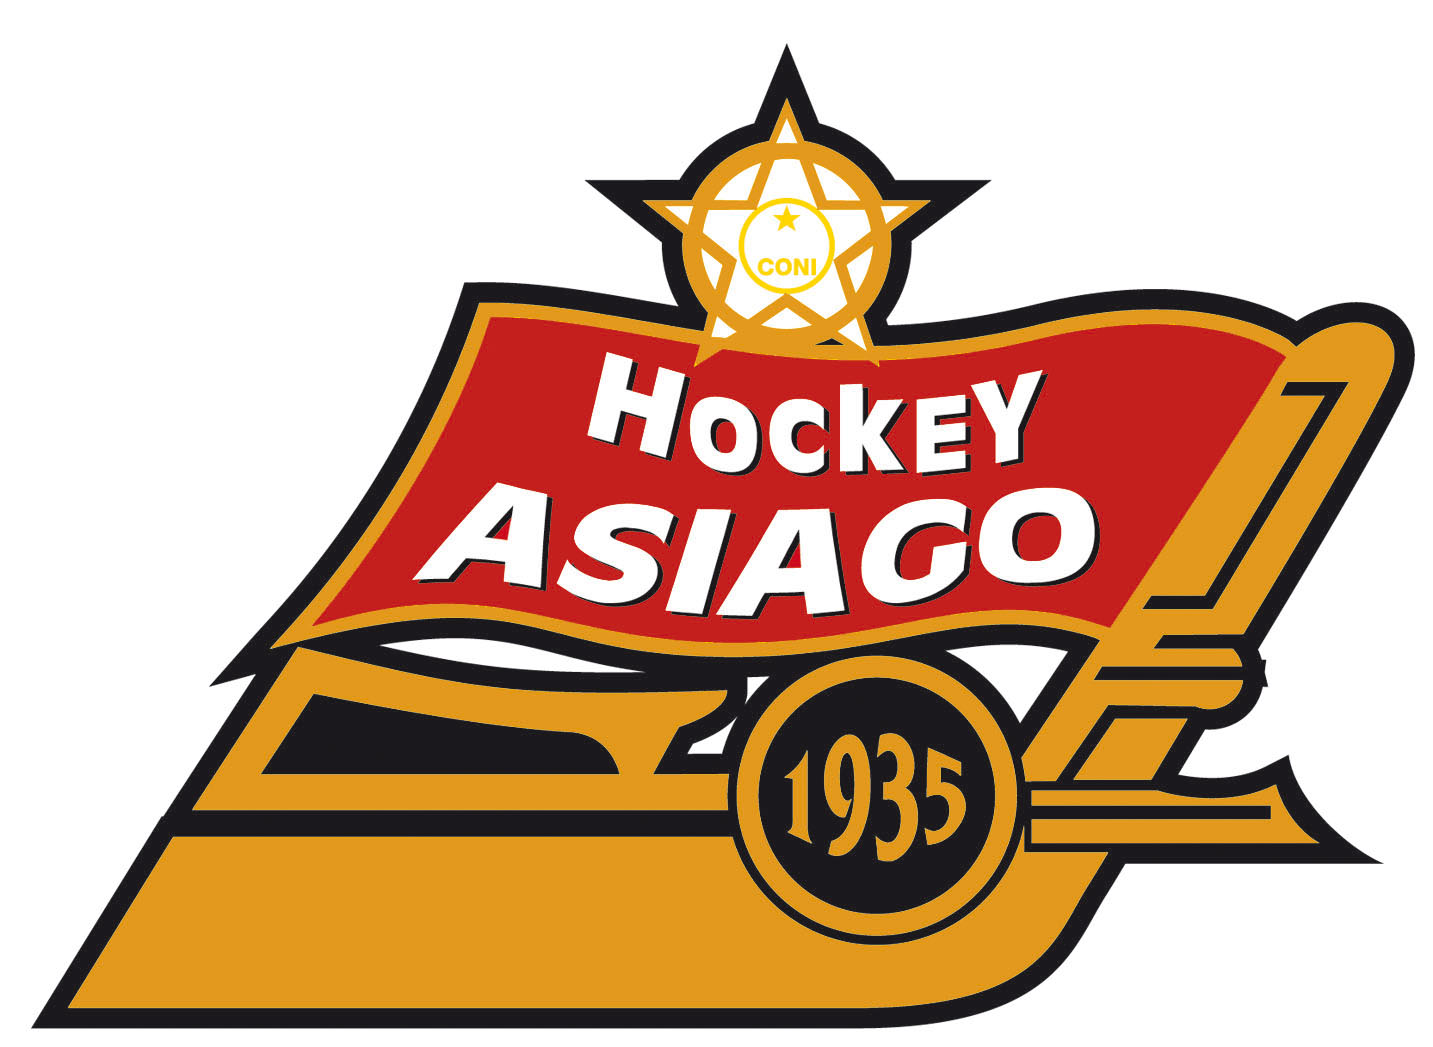 Sponsor Day e presentazione Migross Supermercati Asiago Hockey domenica 28 Agosto Piazza II Risorgimento alle ore 17